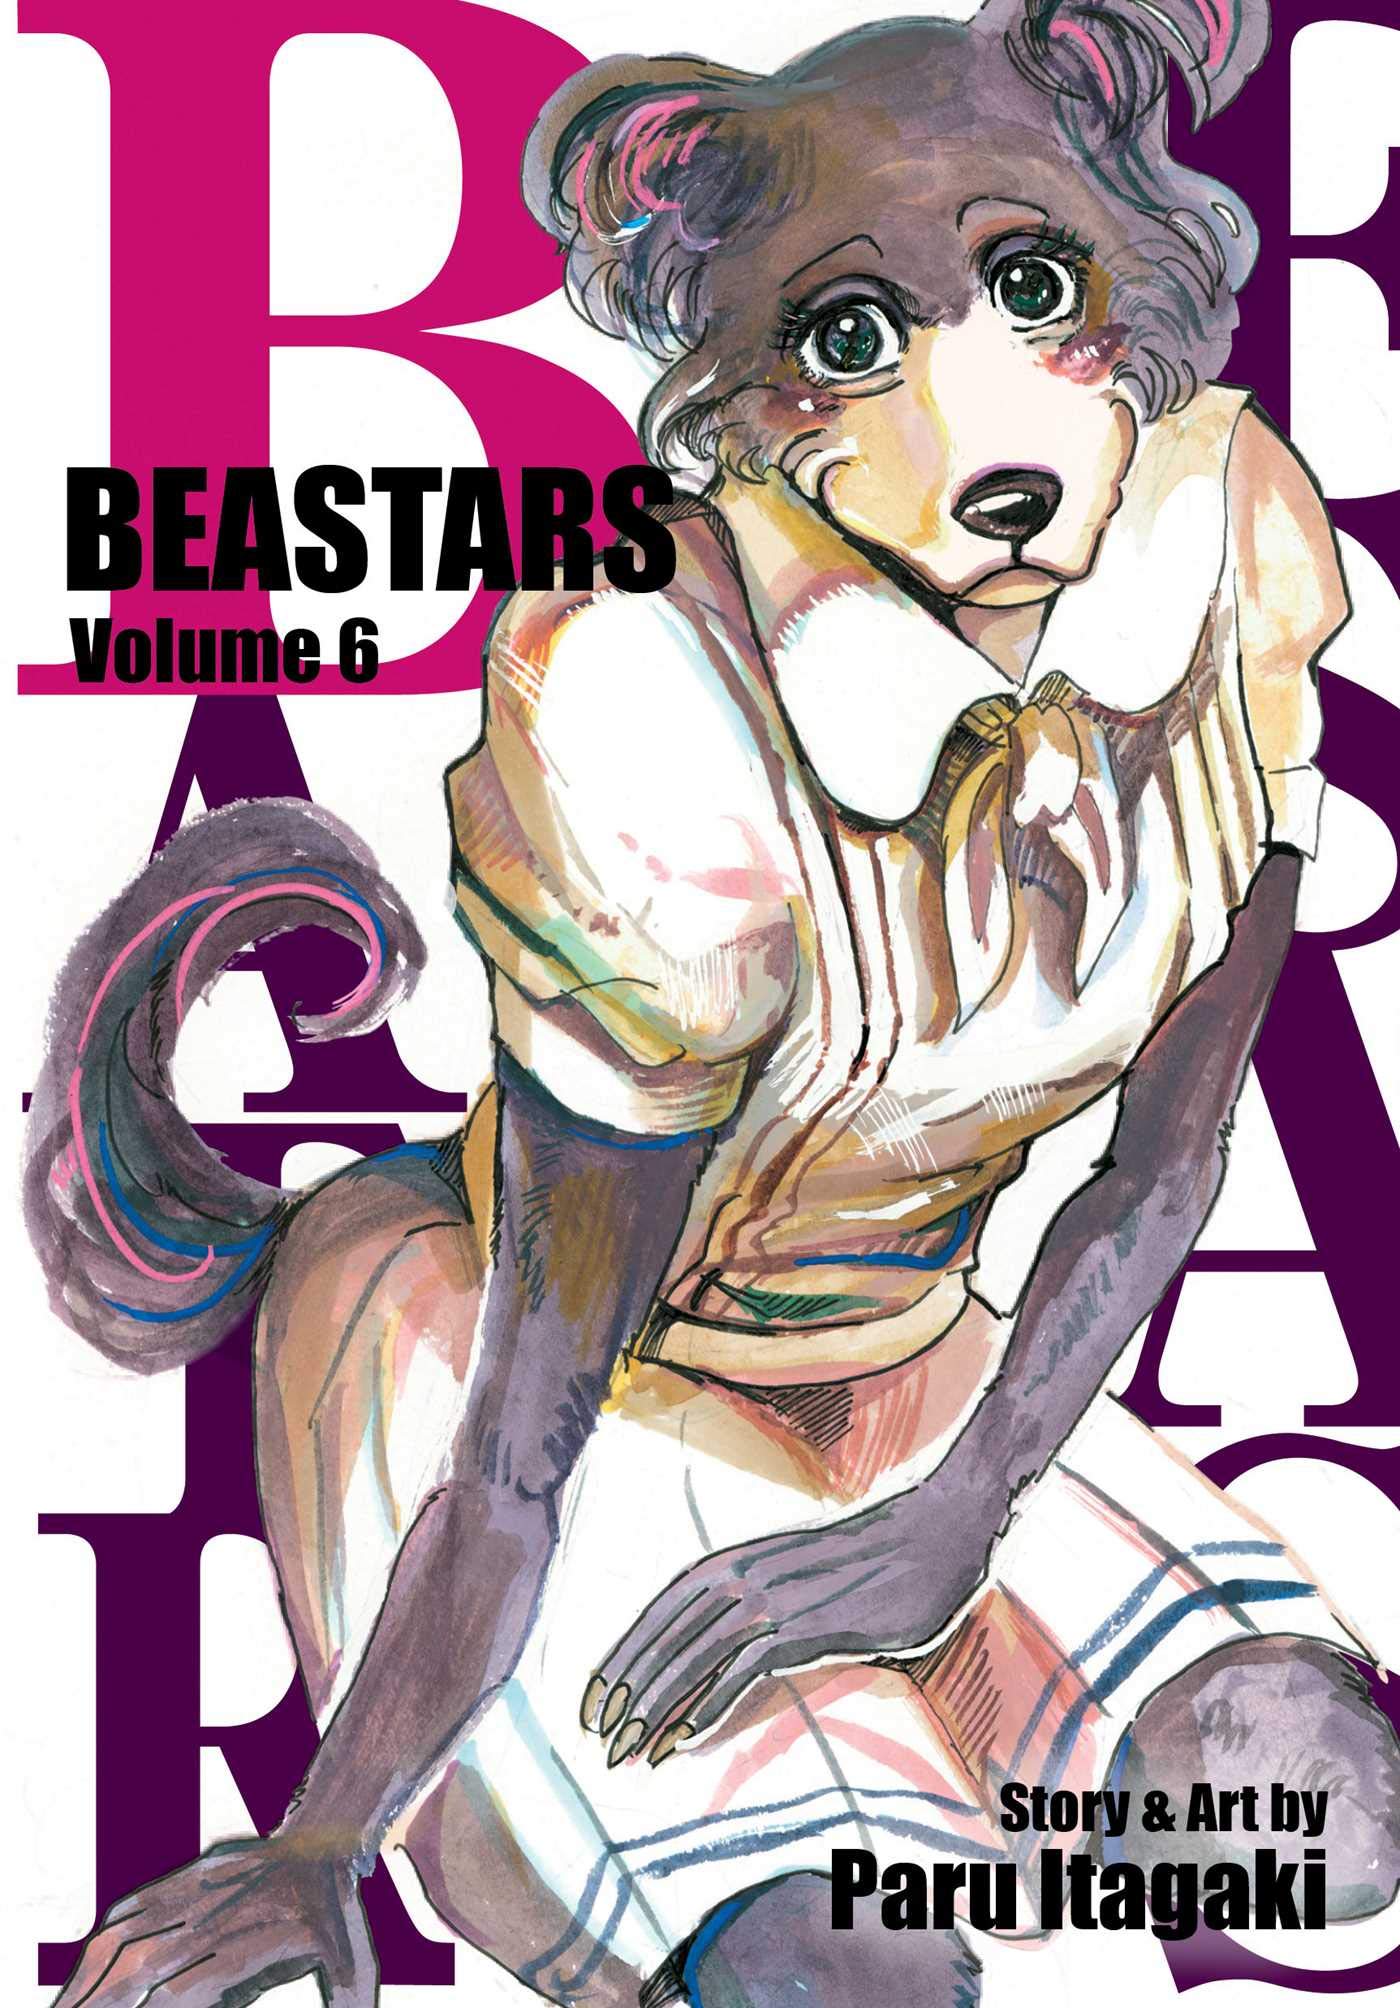 Beastars - Volume 6 | Paru Itagaki image0